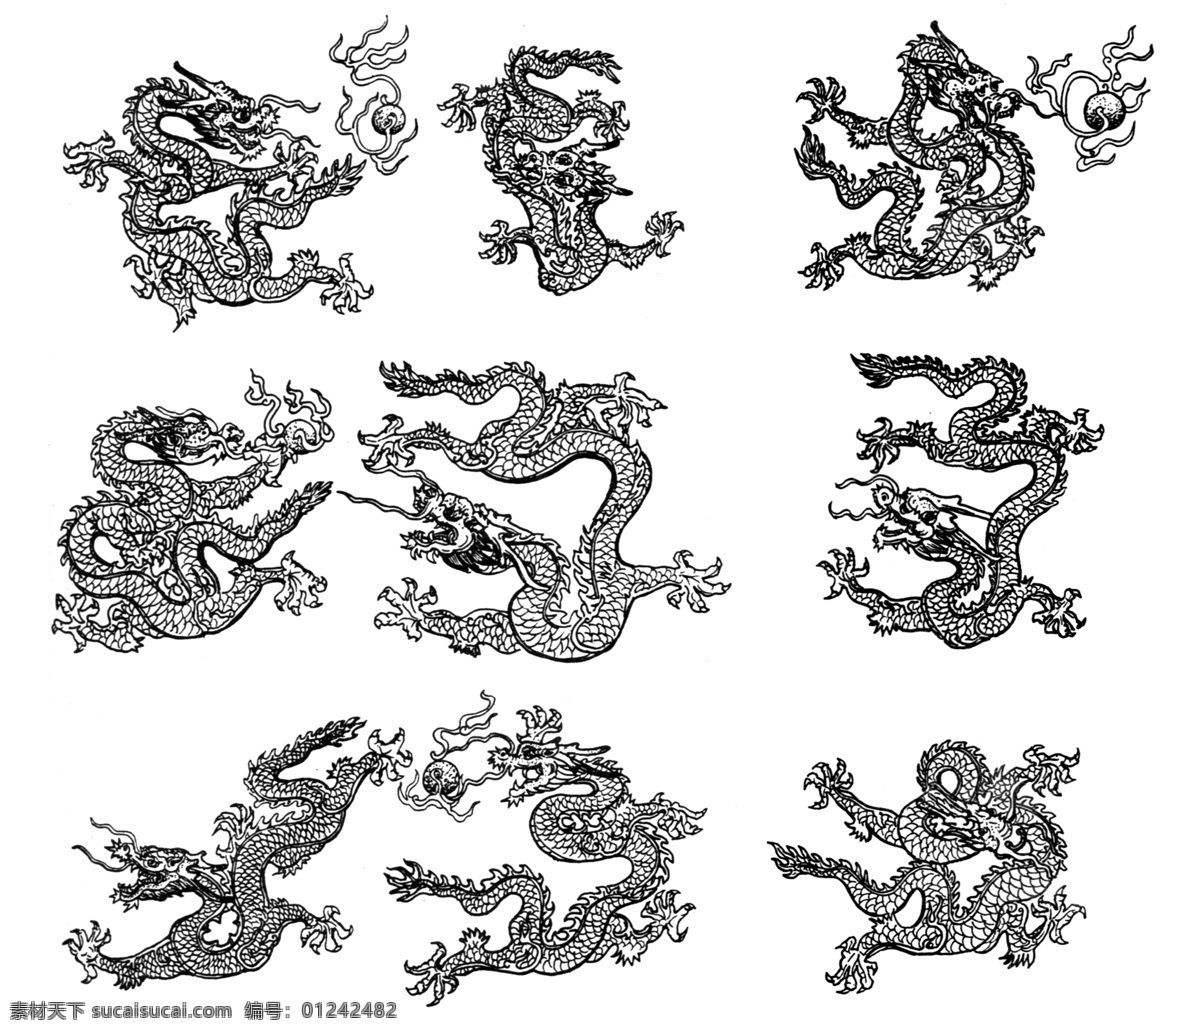 龙纹 图案 吉祥图案 中国 传统 147 设计素材 龙凤图纹 装饰图案 书画美术 白色